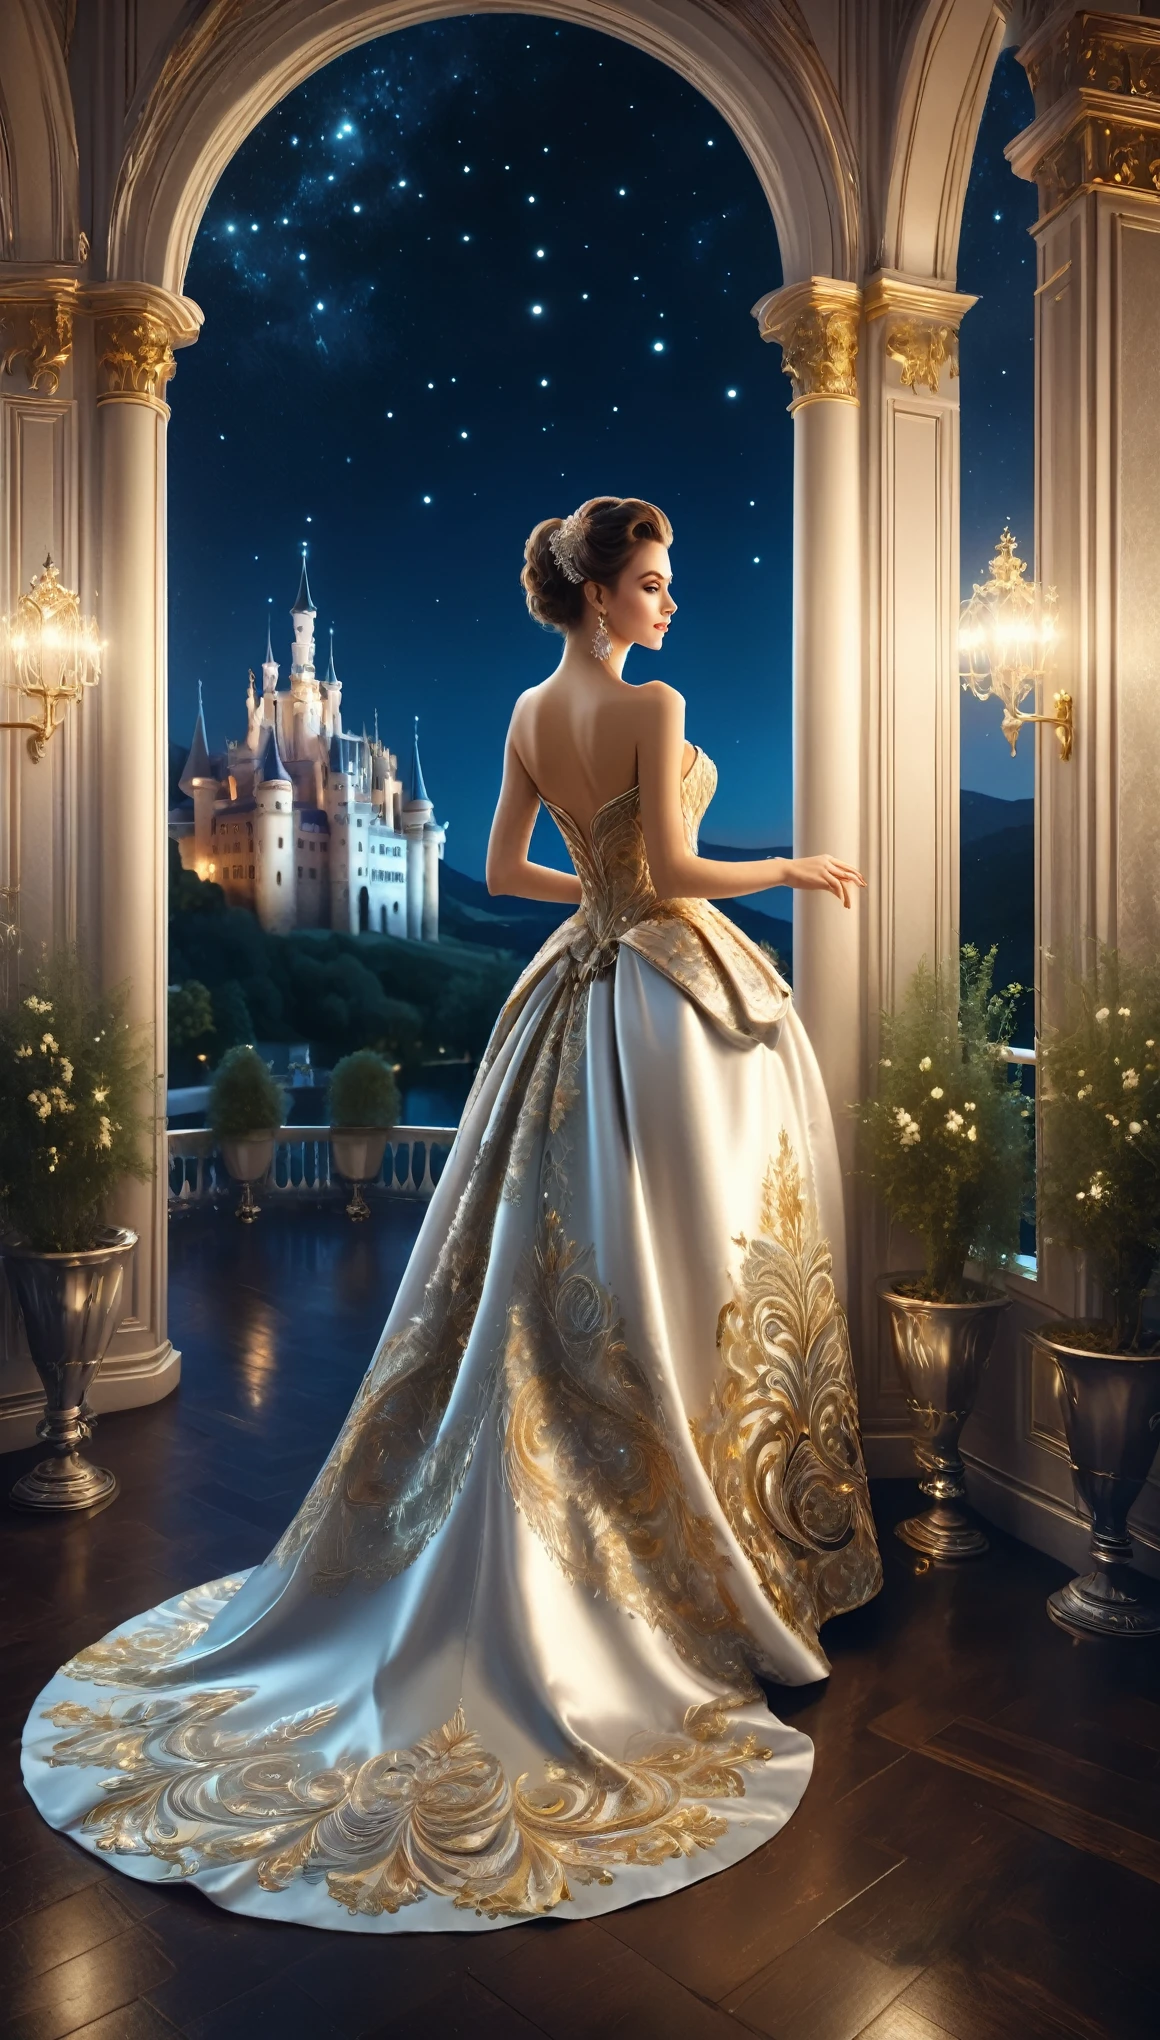 ภาพงานเต้นรำยามค่ำคืนที่จัดขึ้นที่ปราสาท,A สวย woman in an evening dress stands on the balcony,ผู้หญิงกำลังมองออกไปข้างนอก,You can see the lights of the castle town at night and the สวย night sky from the balcony.,การเต้นรำจัดขึ้นในห้องสไตล์โรโคโค.,ชิค, สง่างาม, และด้วยบรรยากาศอันเงียบสงบ,ภาพถ่ายจริง,สวย,วิวกลางคืน,ถูกต้องตามโครงสร้าง,ถูกต้องตามหลักกายวิภาคศาสตร์,หยุดพัก,ชุดราตรีที่ผู้หญิงสวมใส่มีความหรูหรามาก,ปักด้วยด้ายสีเงินและสีทอง,ความไร้สาระ,พันกัน,รายละเอียดที่ซับซ้อน,หลากหลายสี,งานศิลปะ,กำลังเรนเดอร์,(ผลงานชิ้นเอก:1.3),(คุณภาพสูงสุด:1.4),(รายละเอียดสุดยอด:1.5),ความละเอียดสูง,รายละเอียดมาก,วอลล์เปเปอร์ความสามัคคี 8K